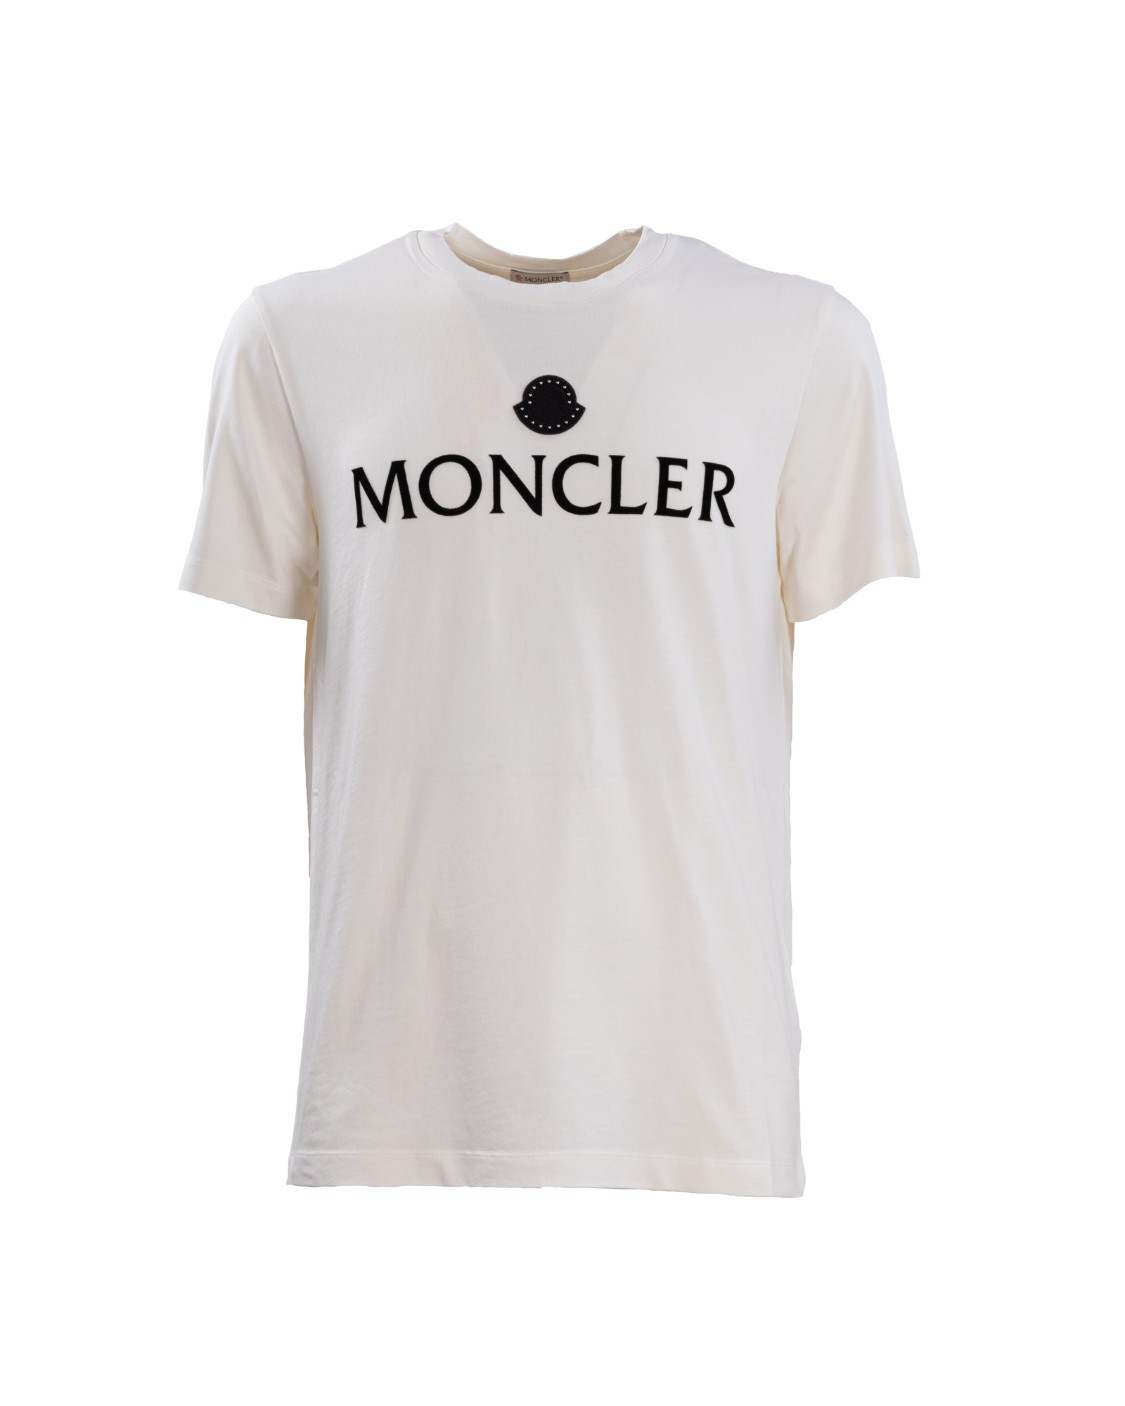 shop MONCLER Saldi T-shirt: Moncler t-shirt in jersey di cotone.
Stampa con lettering e logo sul petto.
Collo a giro.
Maniche corte.
Composizione:  100% Cotone.
Made in Turkey.. 8C00007 8390T-032 number 519933